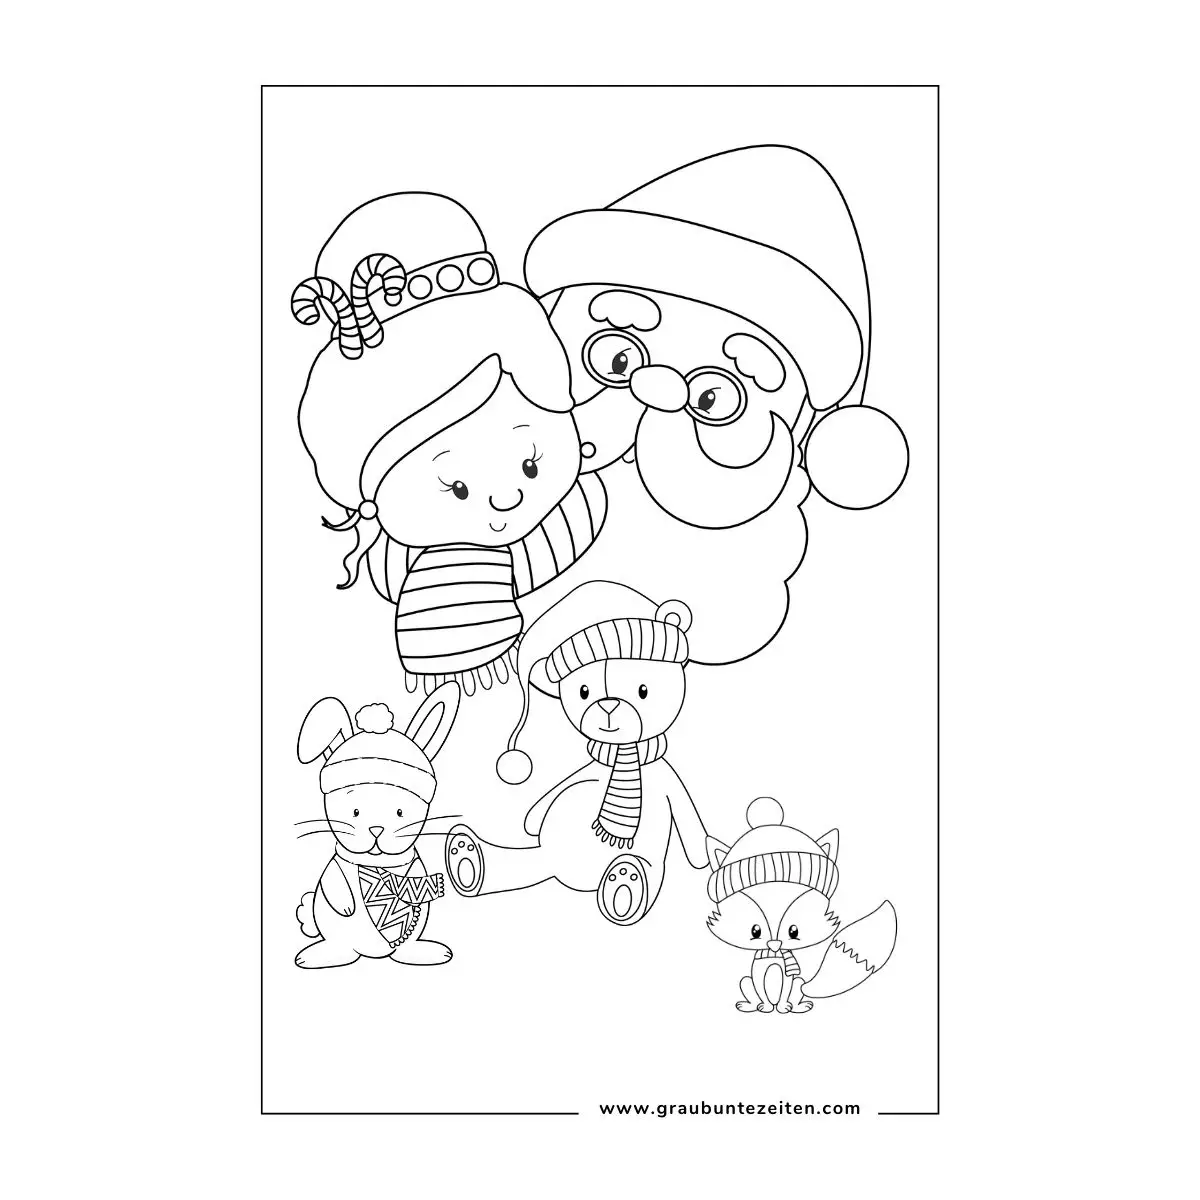 Ausmalbild Weihnachtsmann mit kleinem Mädchen auf dem Arm. Im Vordergrund ein Hase, ein Bär und ein Fuchs mit Strickmütze.